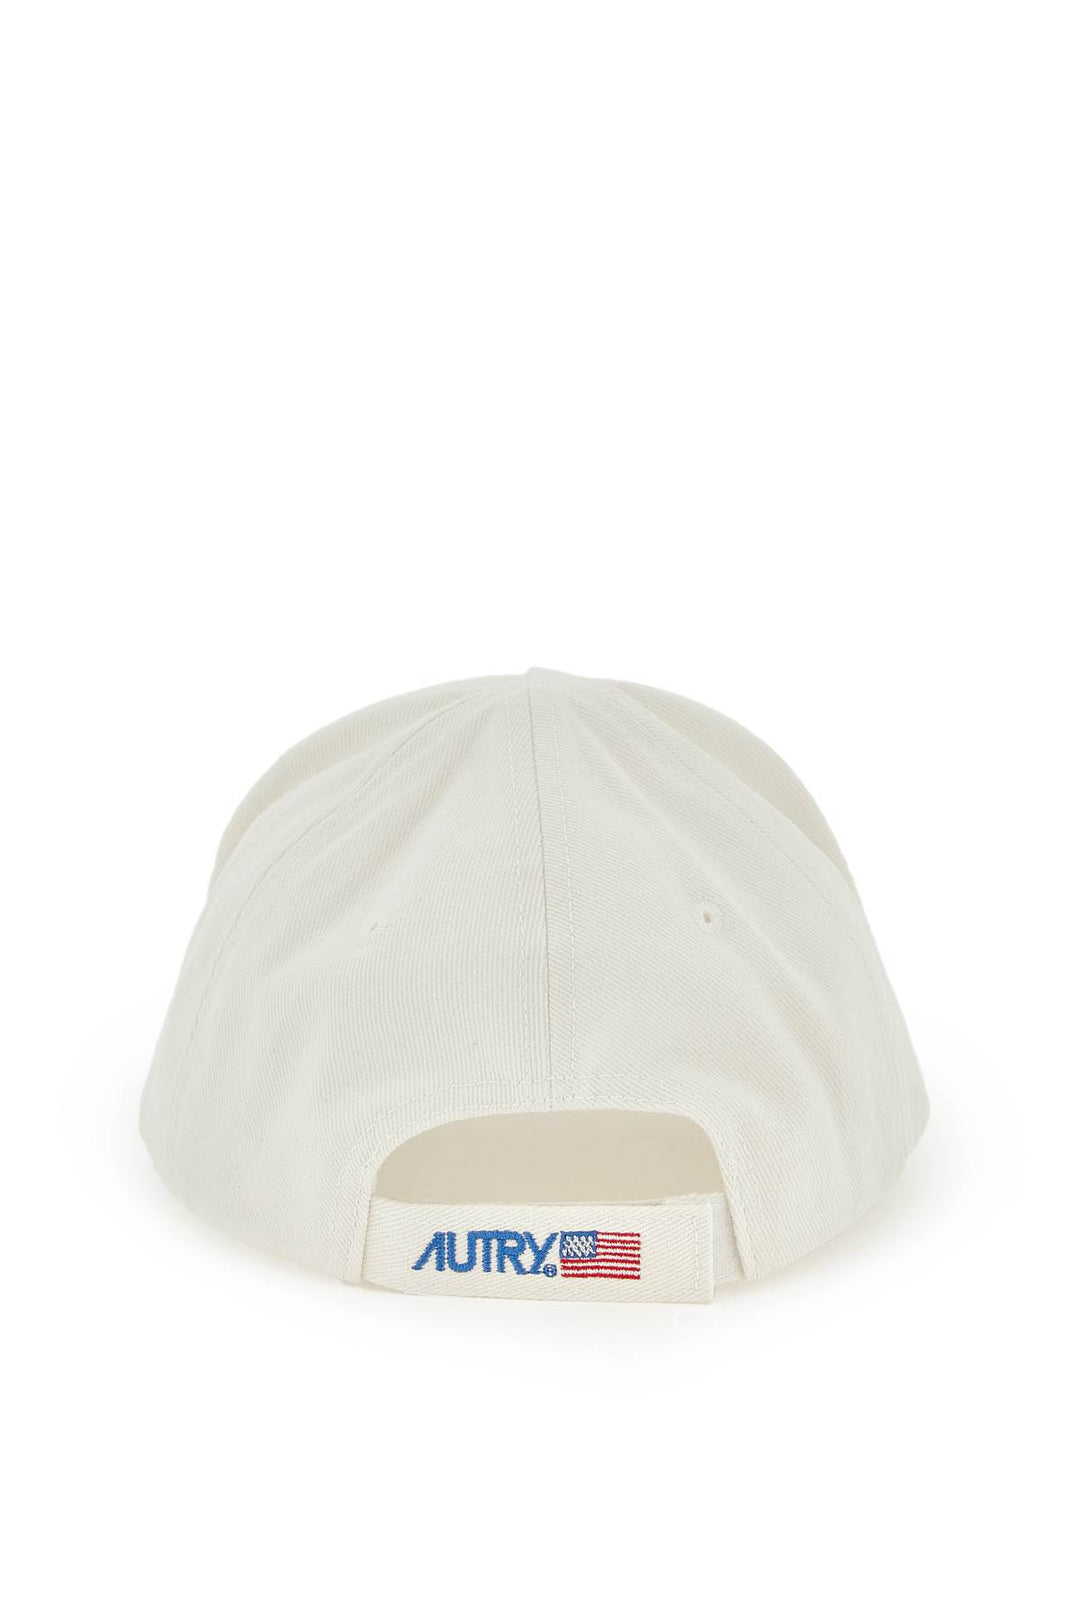 Autry 'Iconic Logo' Baseball Cap   Bianco